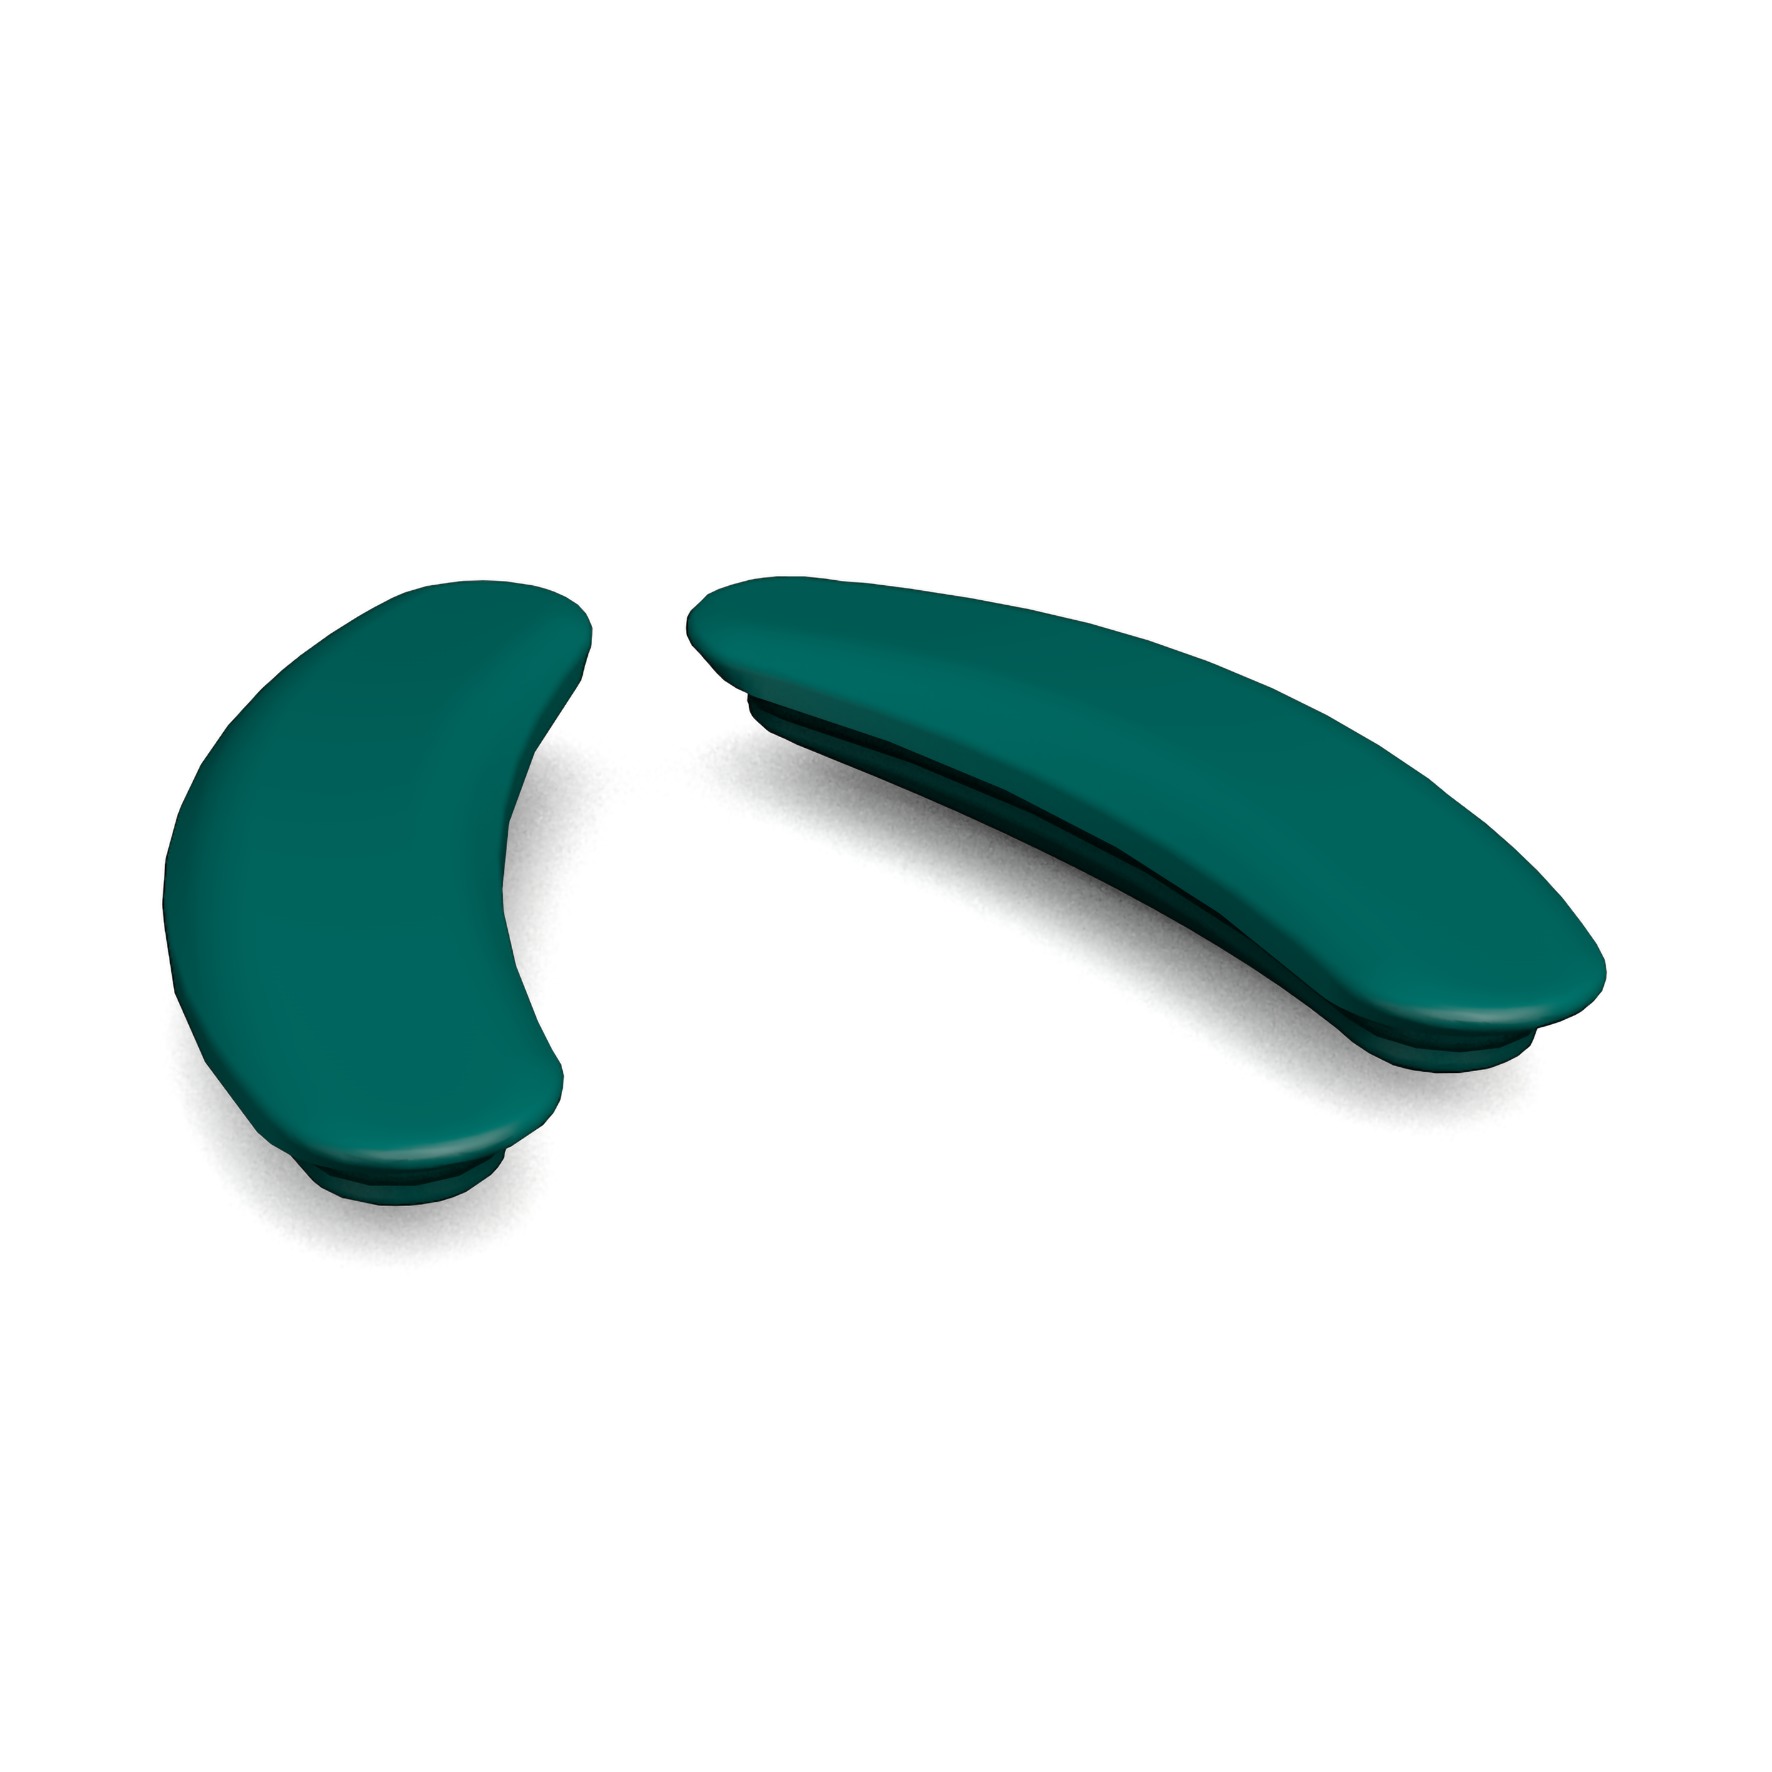 ORNAMIN Non-Slip handle grips for children's tableware